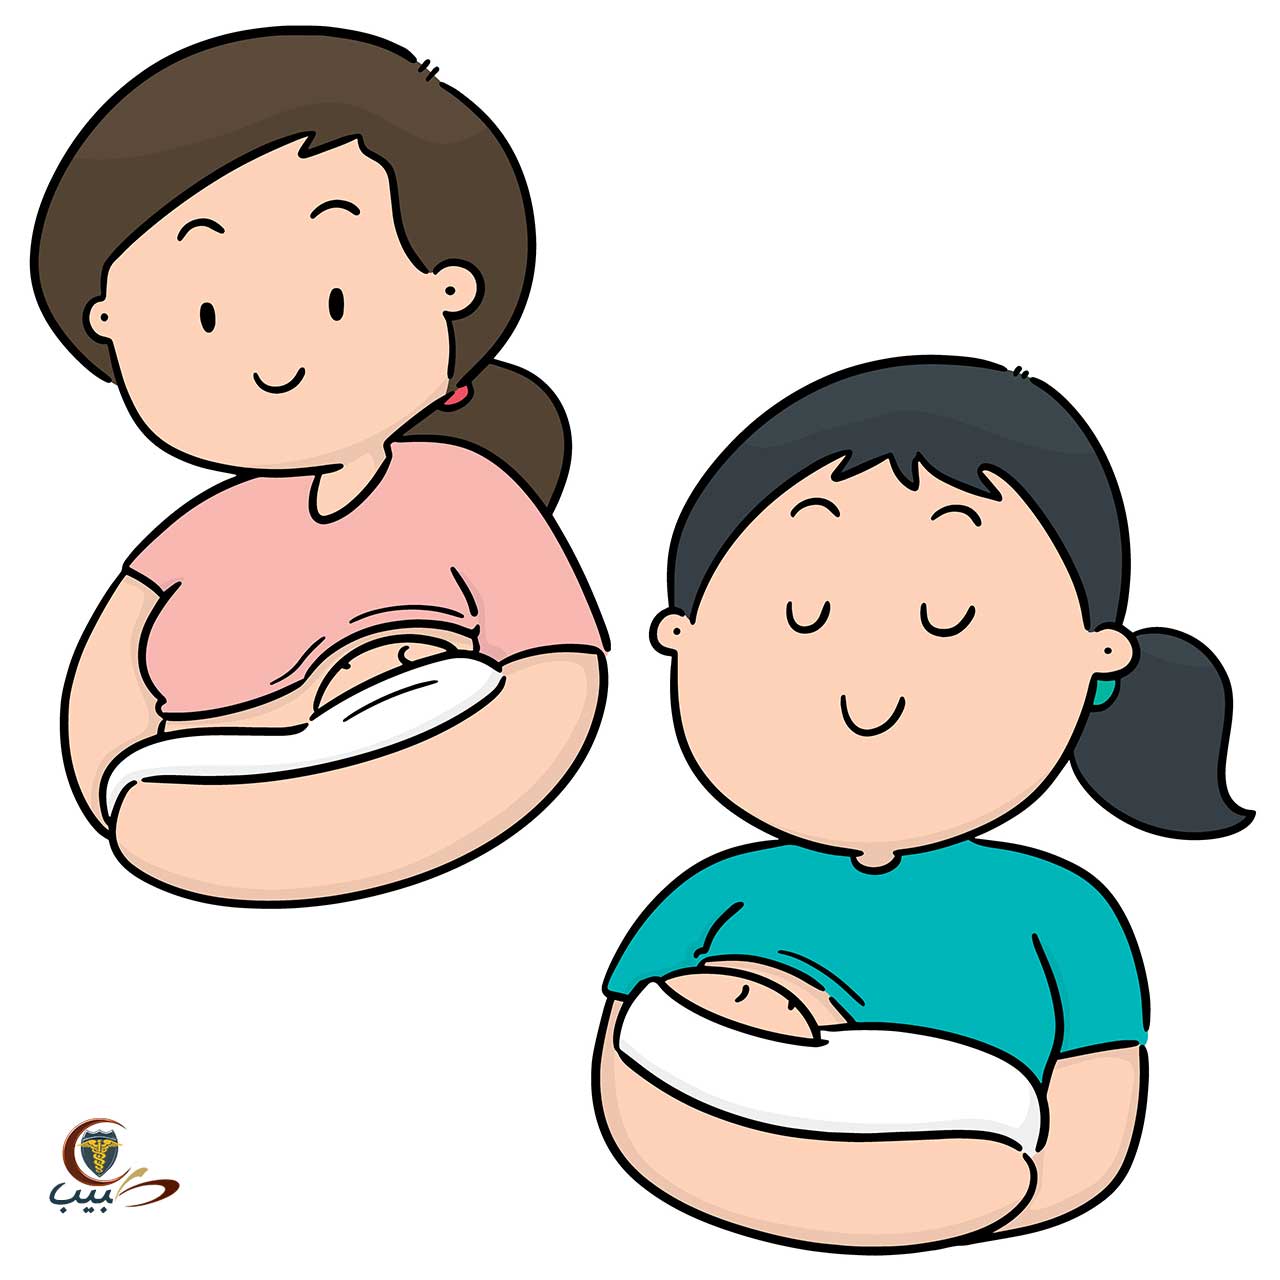 لماذا تعتبر الرضاعة الطبيعية أفضل؟ فوائد للطفل والأم والأب أيضاً